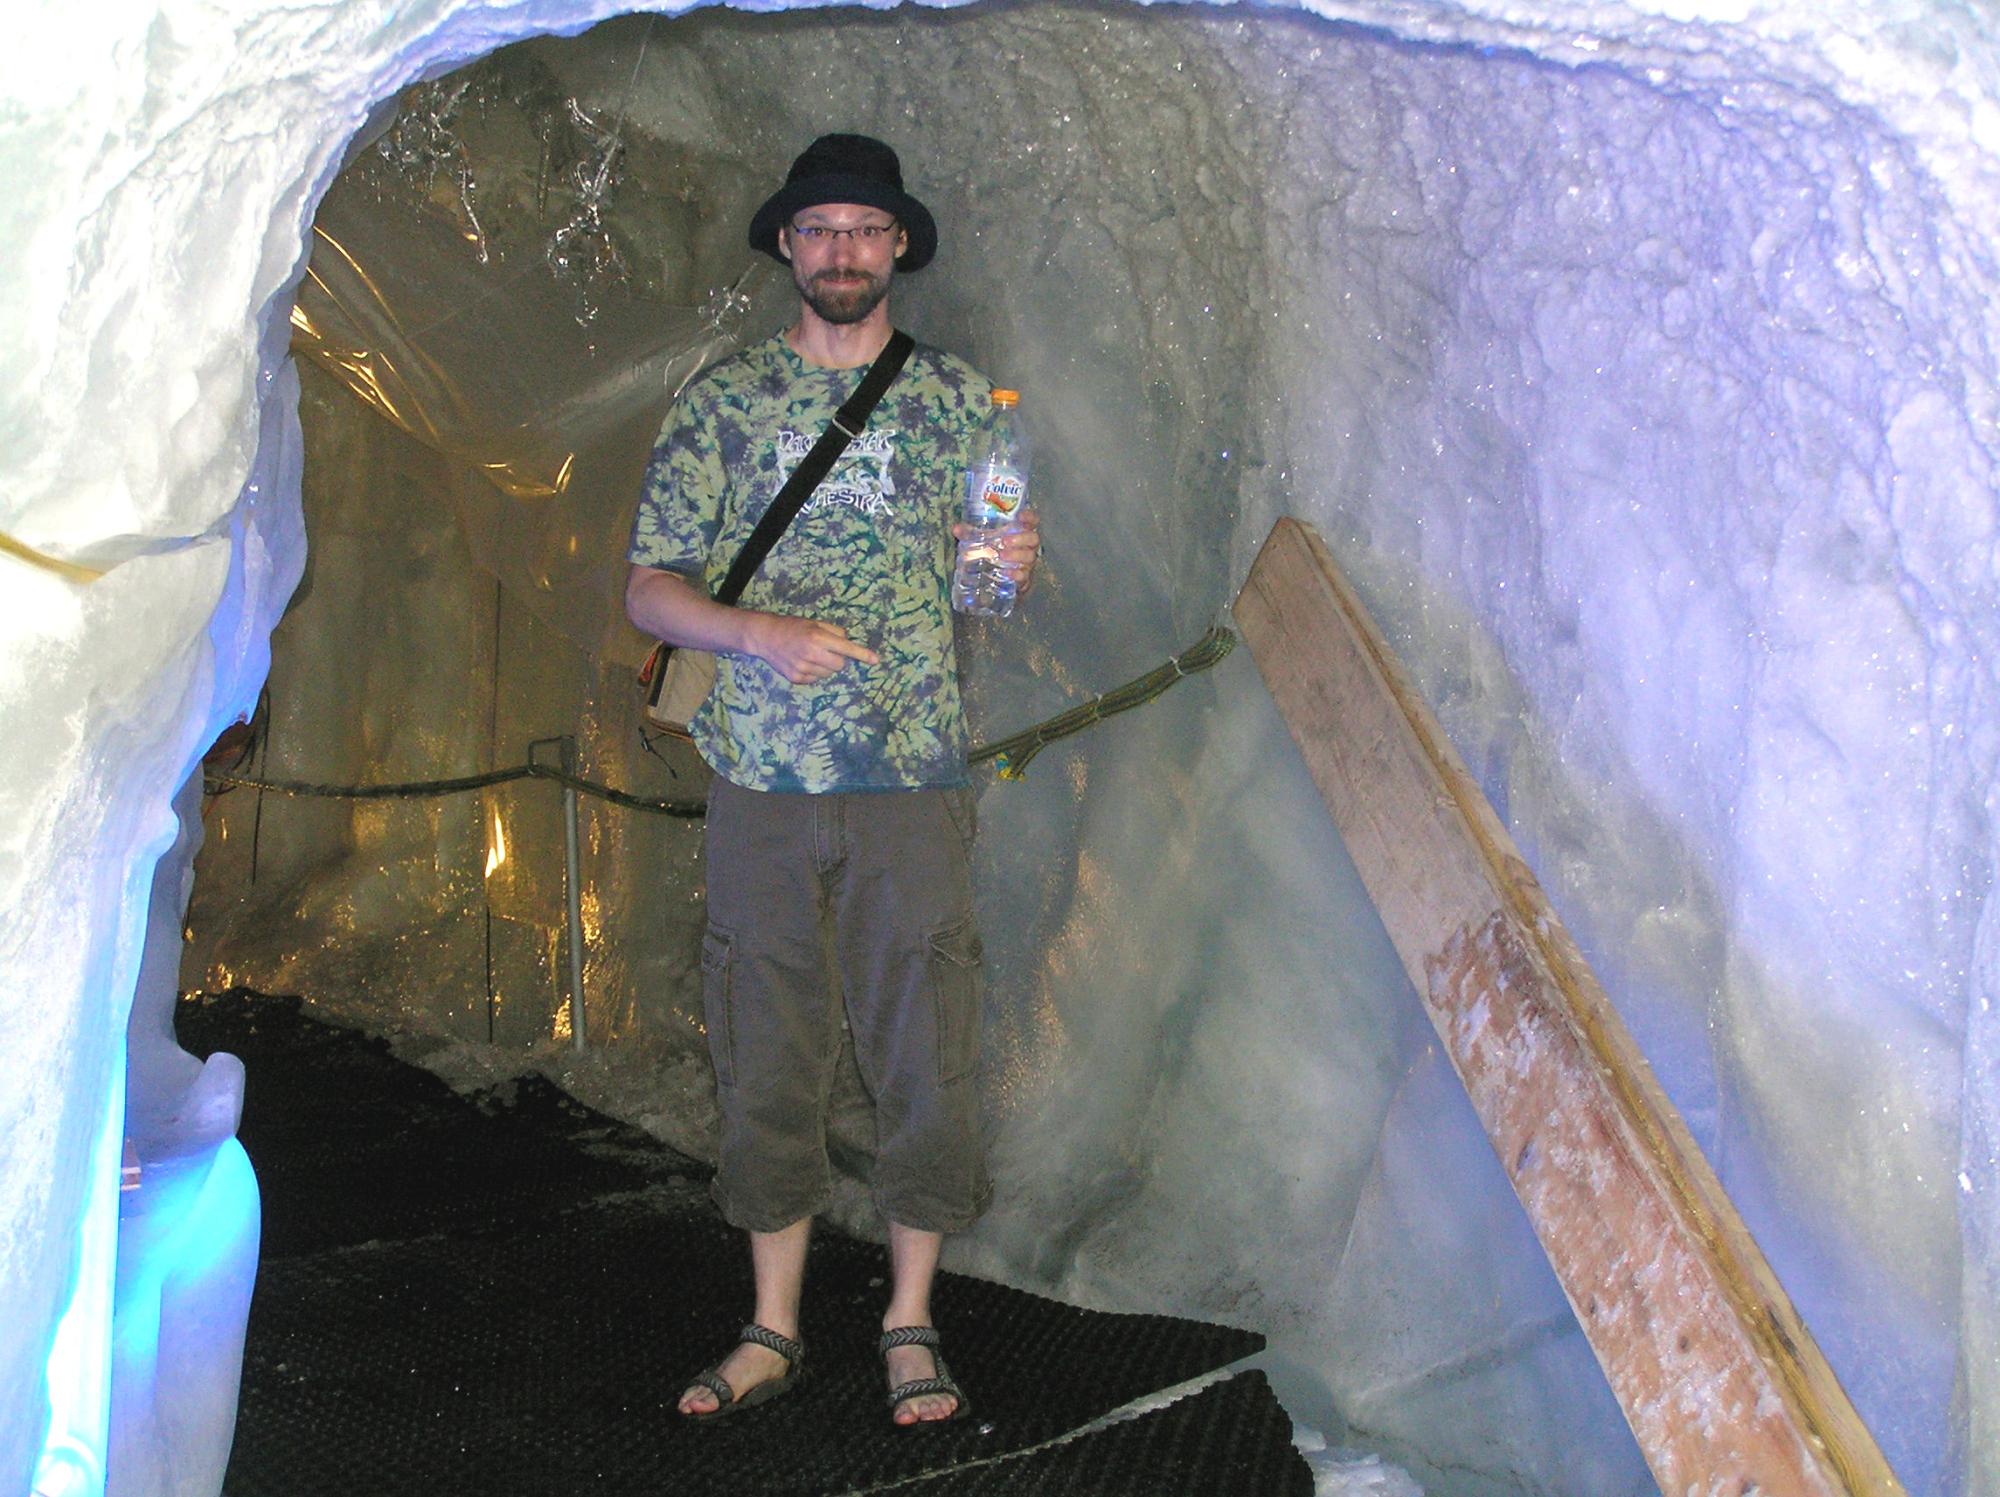 Matterhorn - Ice Cave Brian